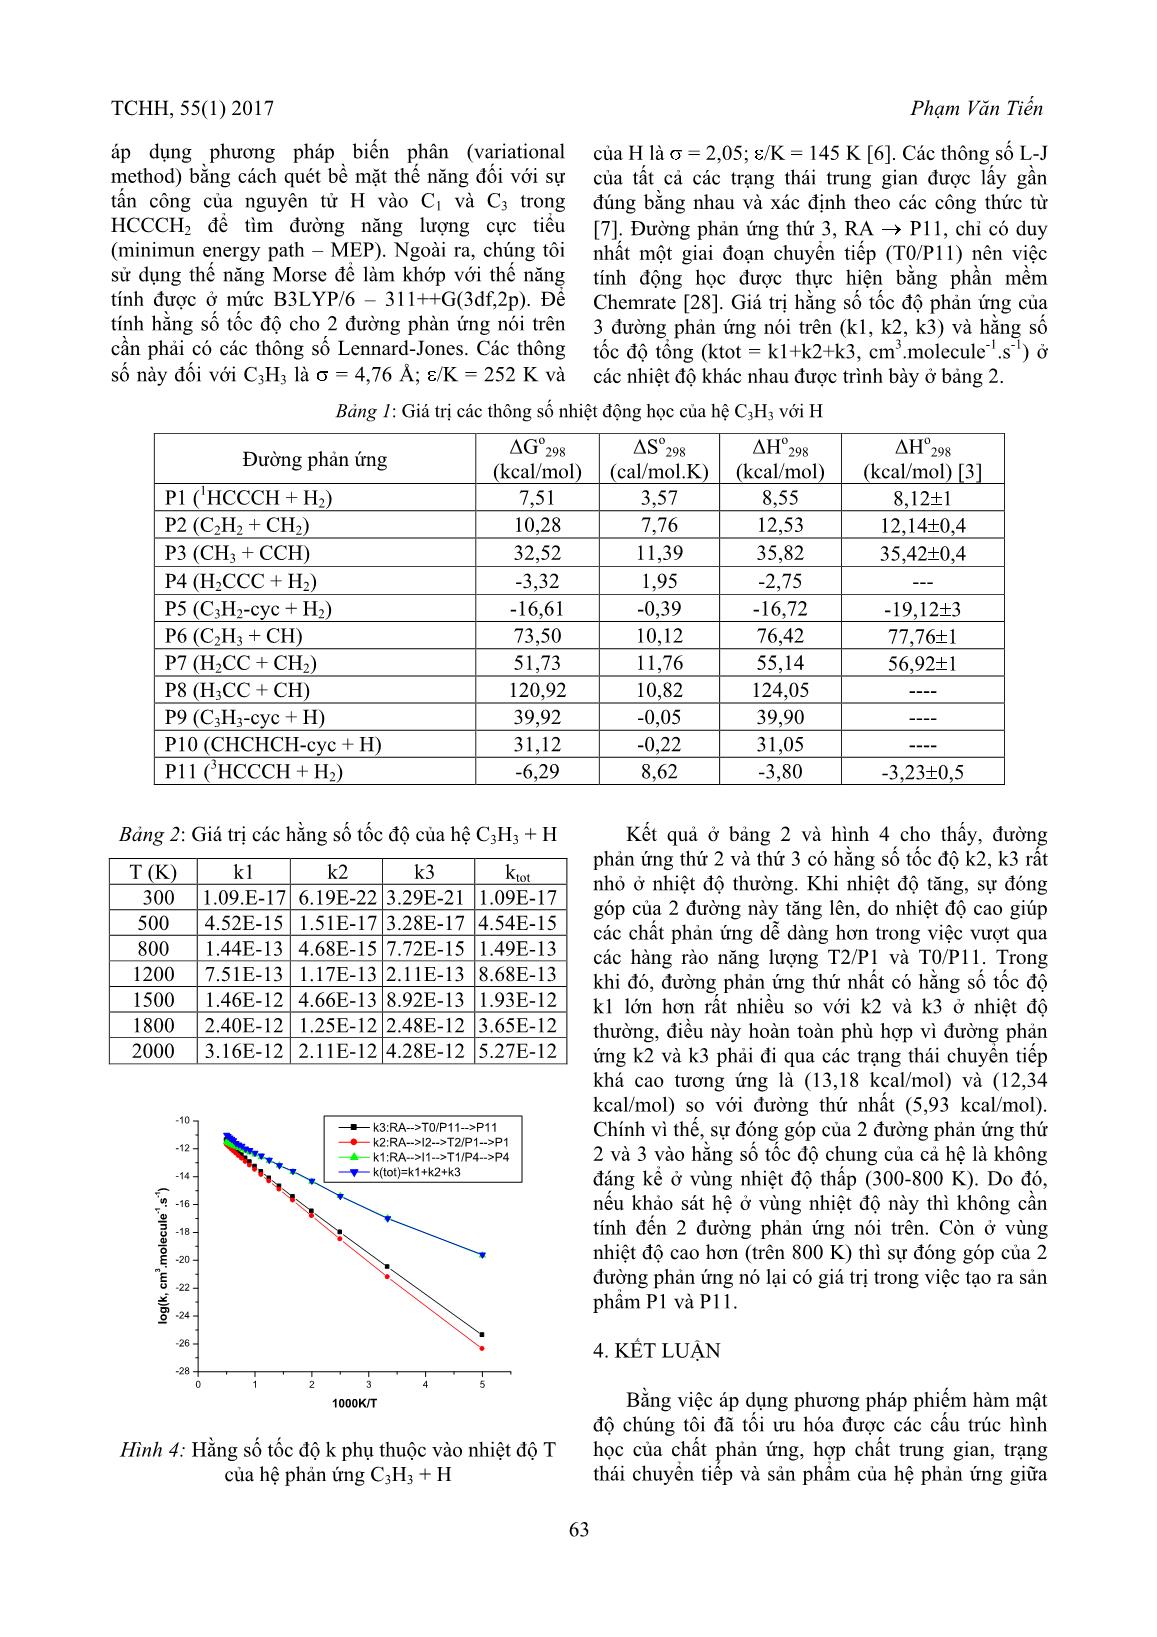 Nghiên cứu lí thuyết cơ chế và động học của phản ứng giữa gốc propargyl (C3H3) với nguyên tử hiđro (H) bằng phương pháp phiếm hàm mật độ trang 6